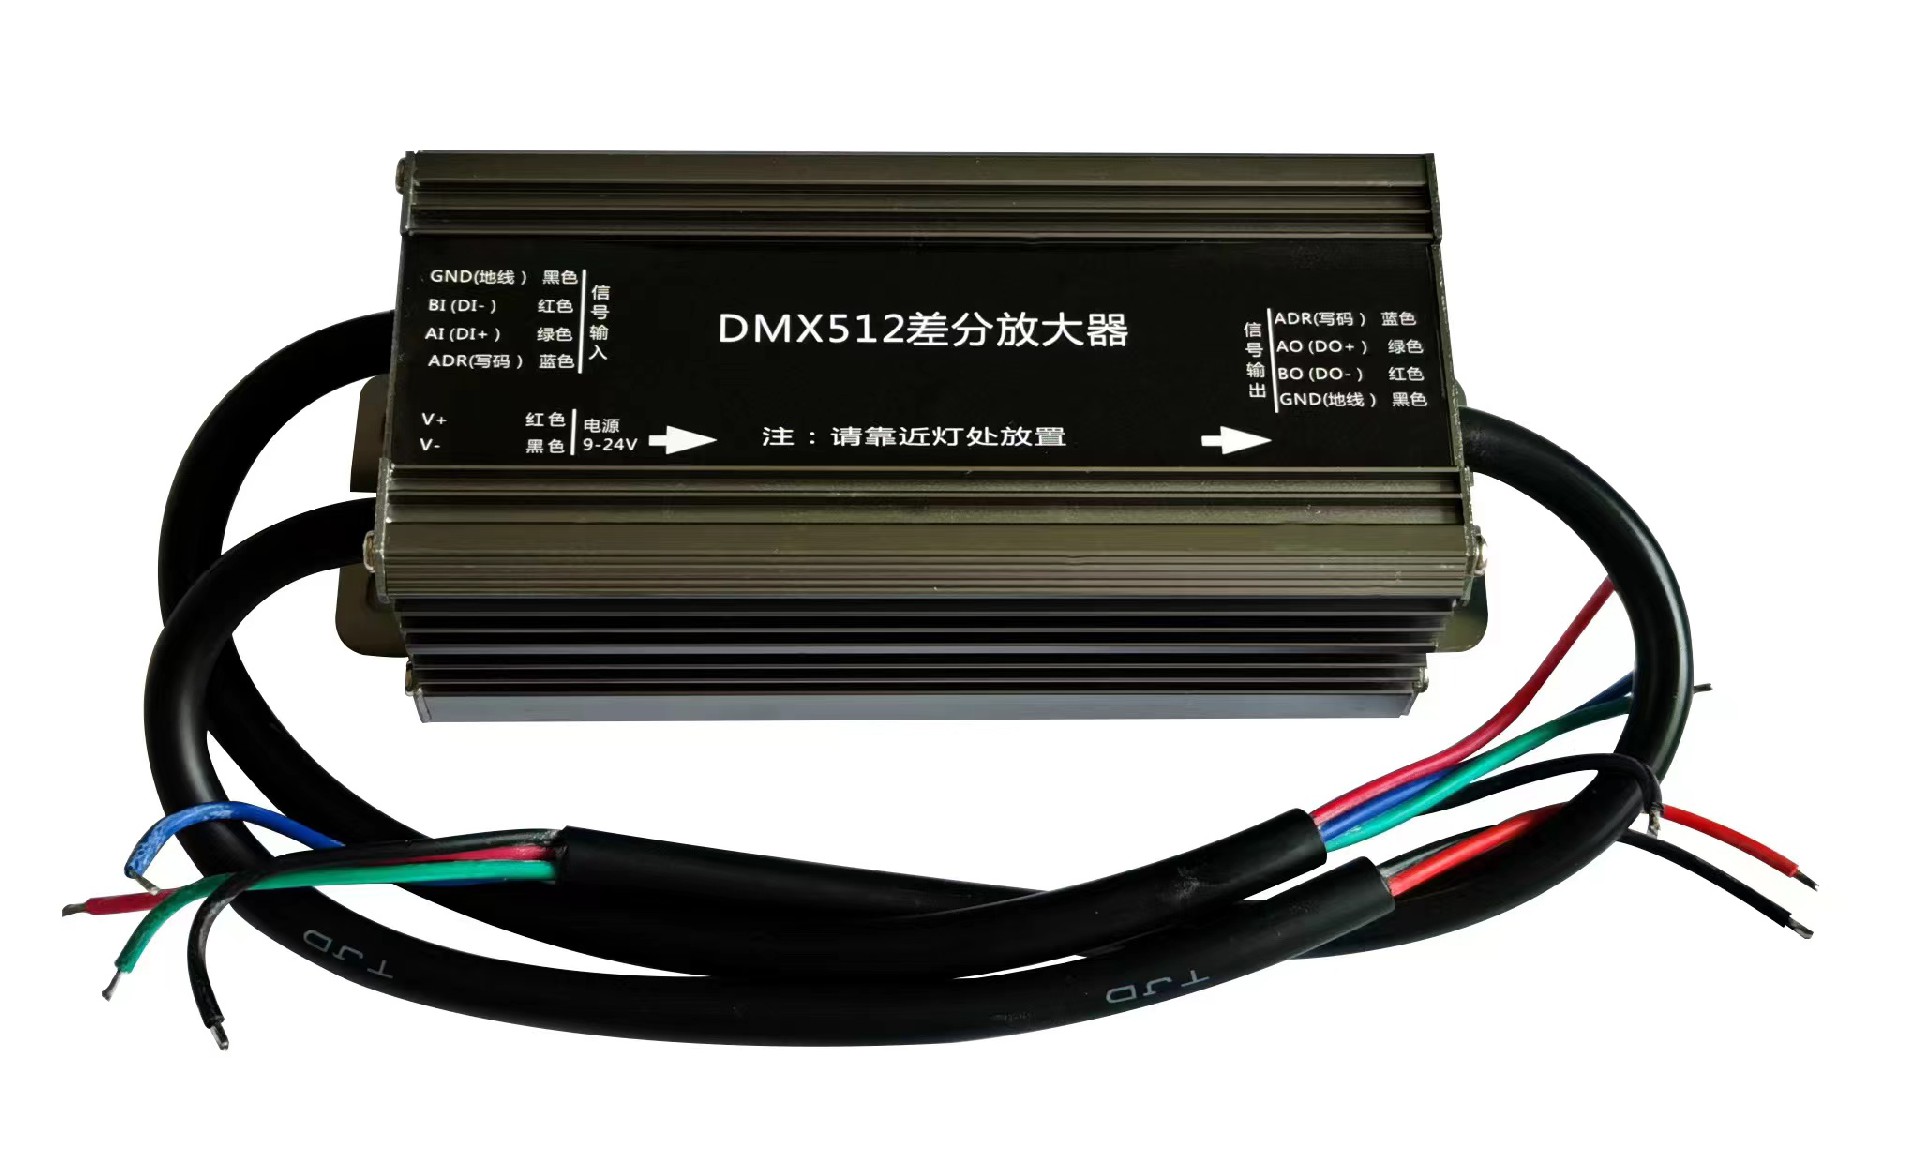 dmx512 signal amplifier.jpg